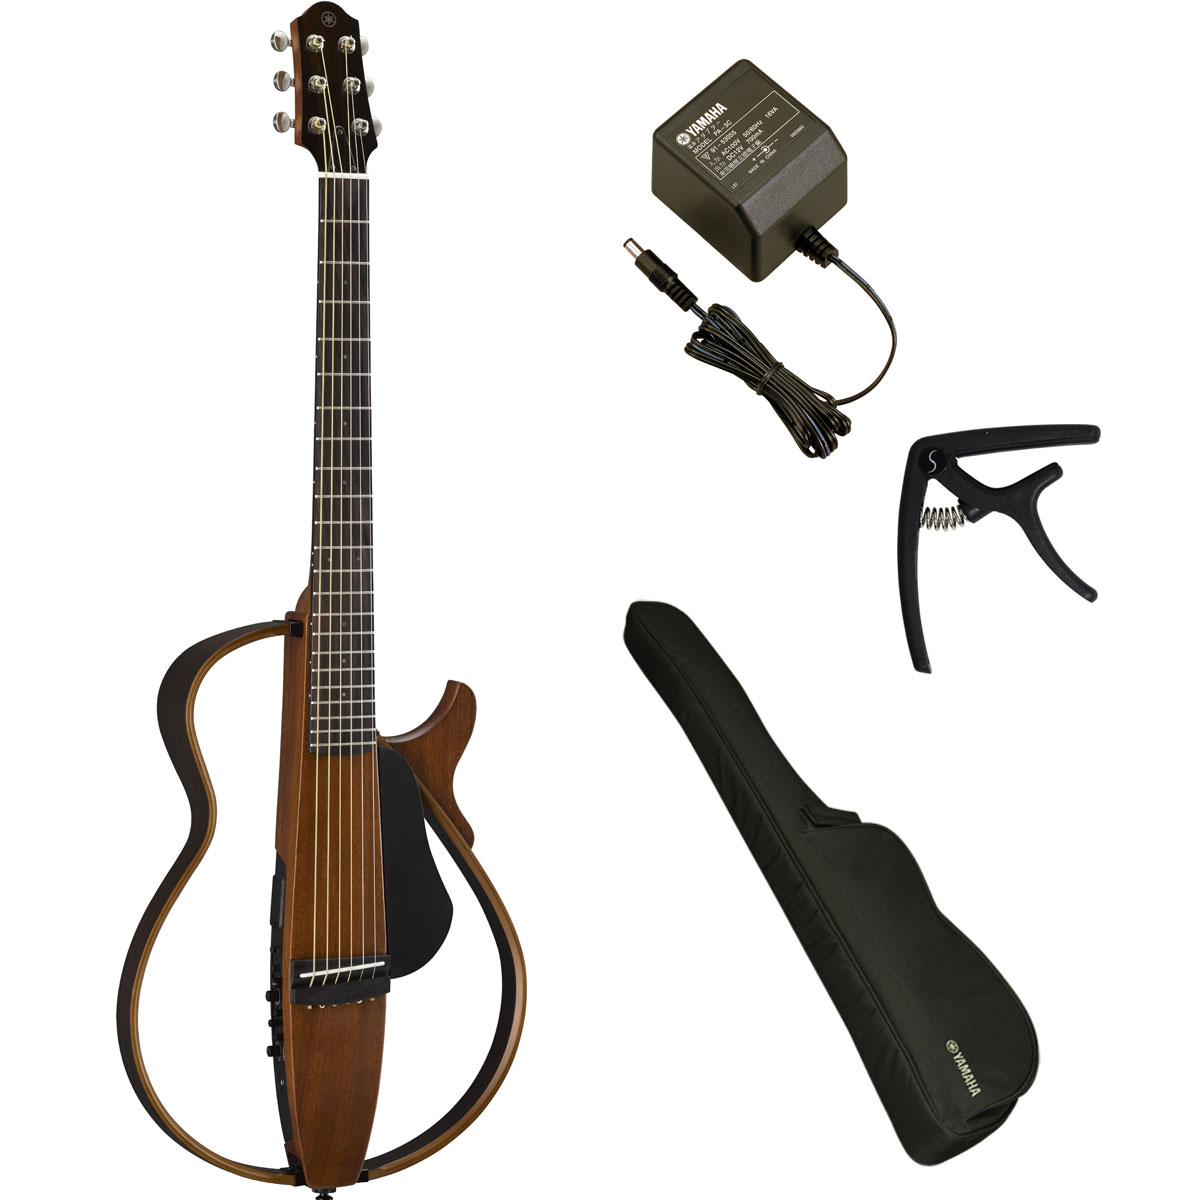 YAMAHA SLG200S NT(ナチュラル) サイレントギター